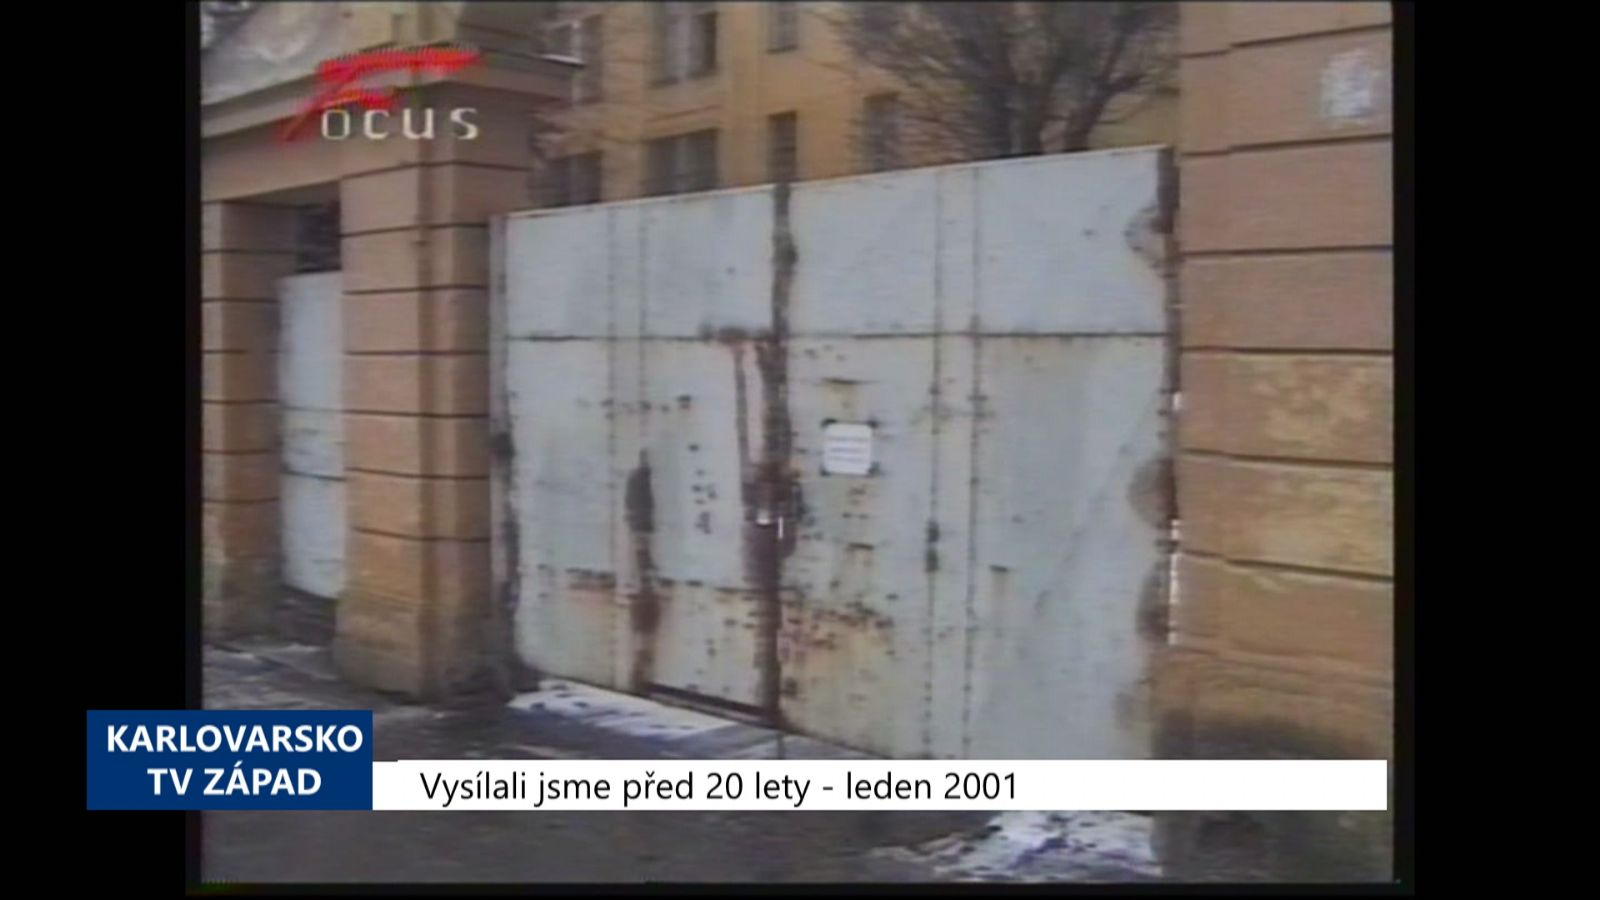 2001 – Cheb: Město se pokusí získat areál bývalých kasáren (TV Západ) 